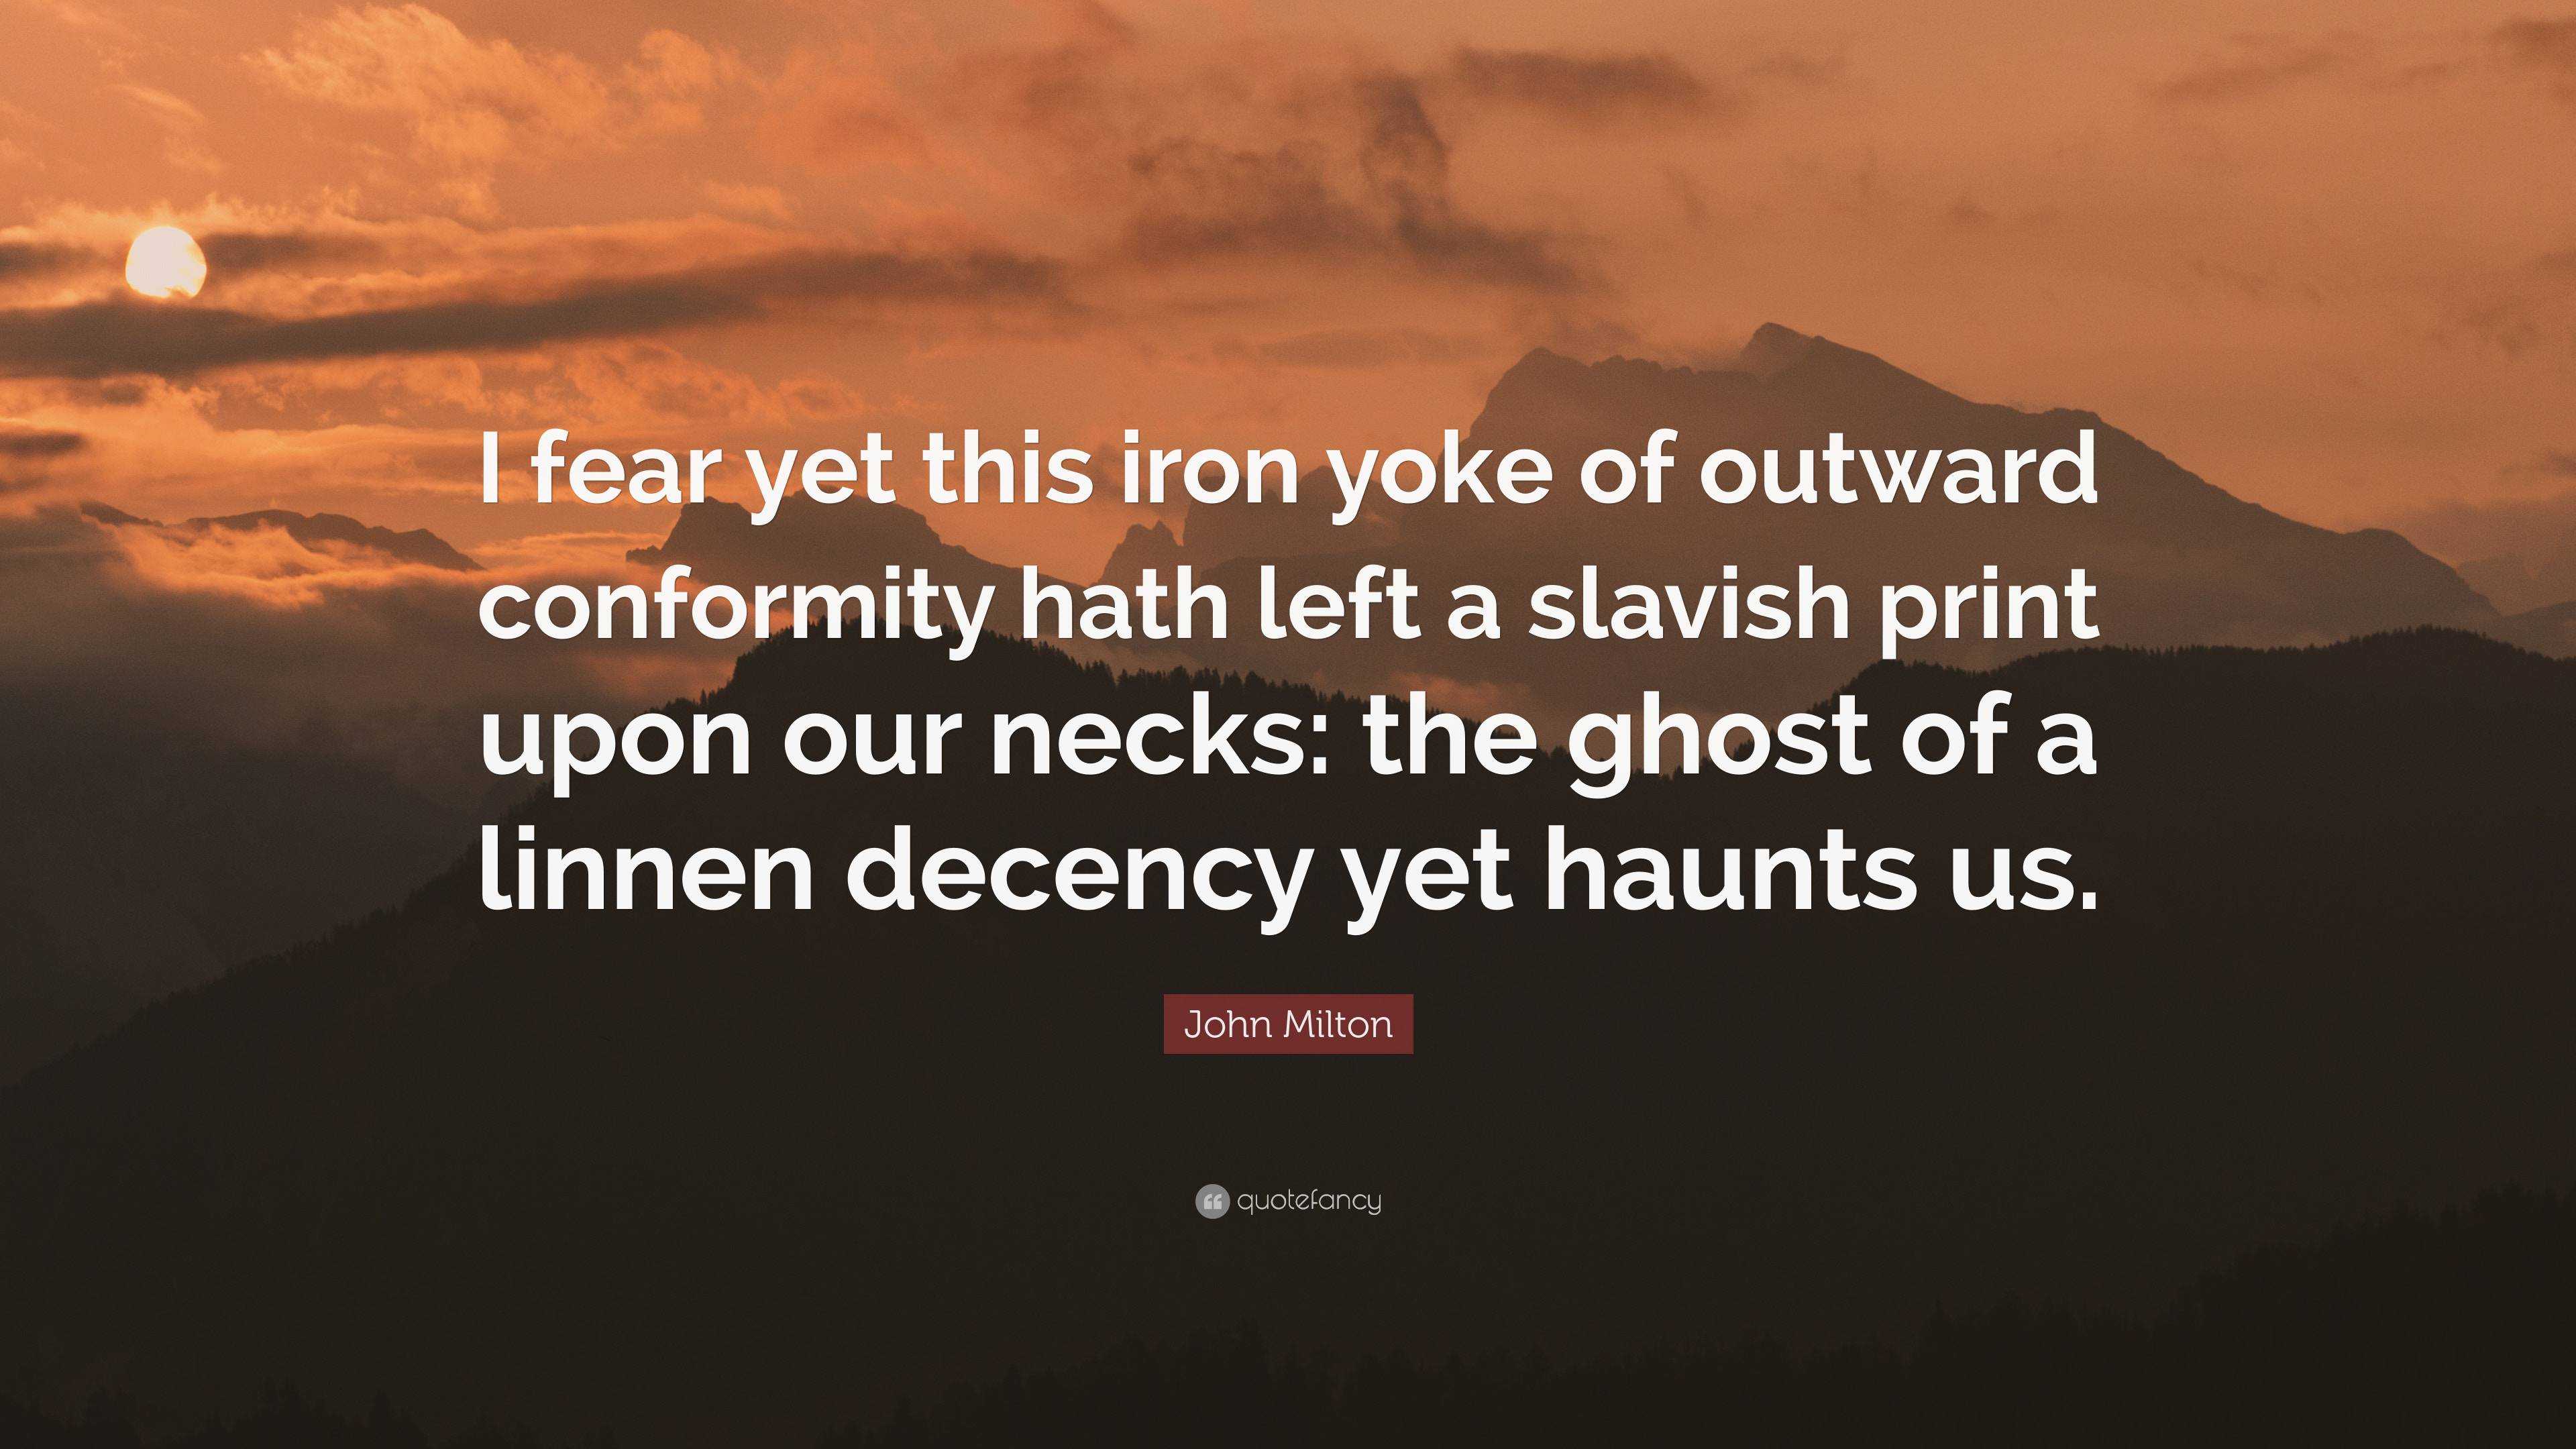 John Milton Quote: “I fear yet this iron yoke of outward